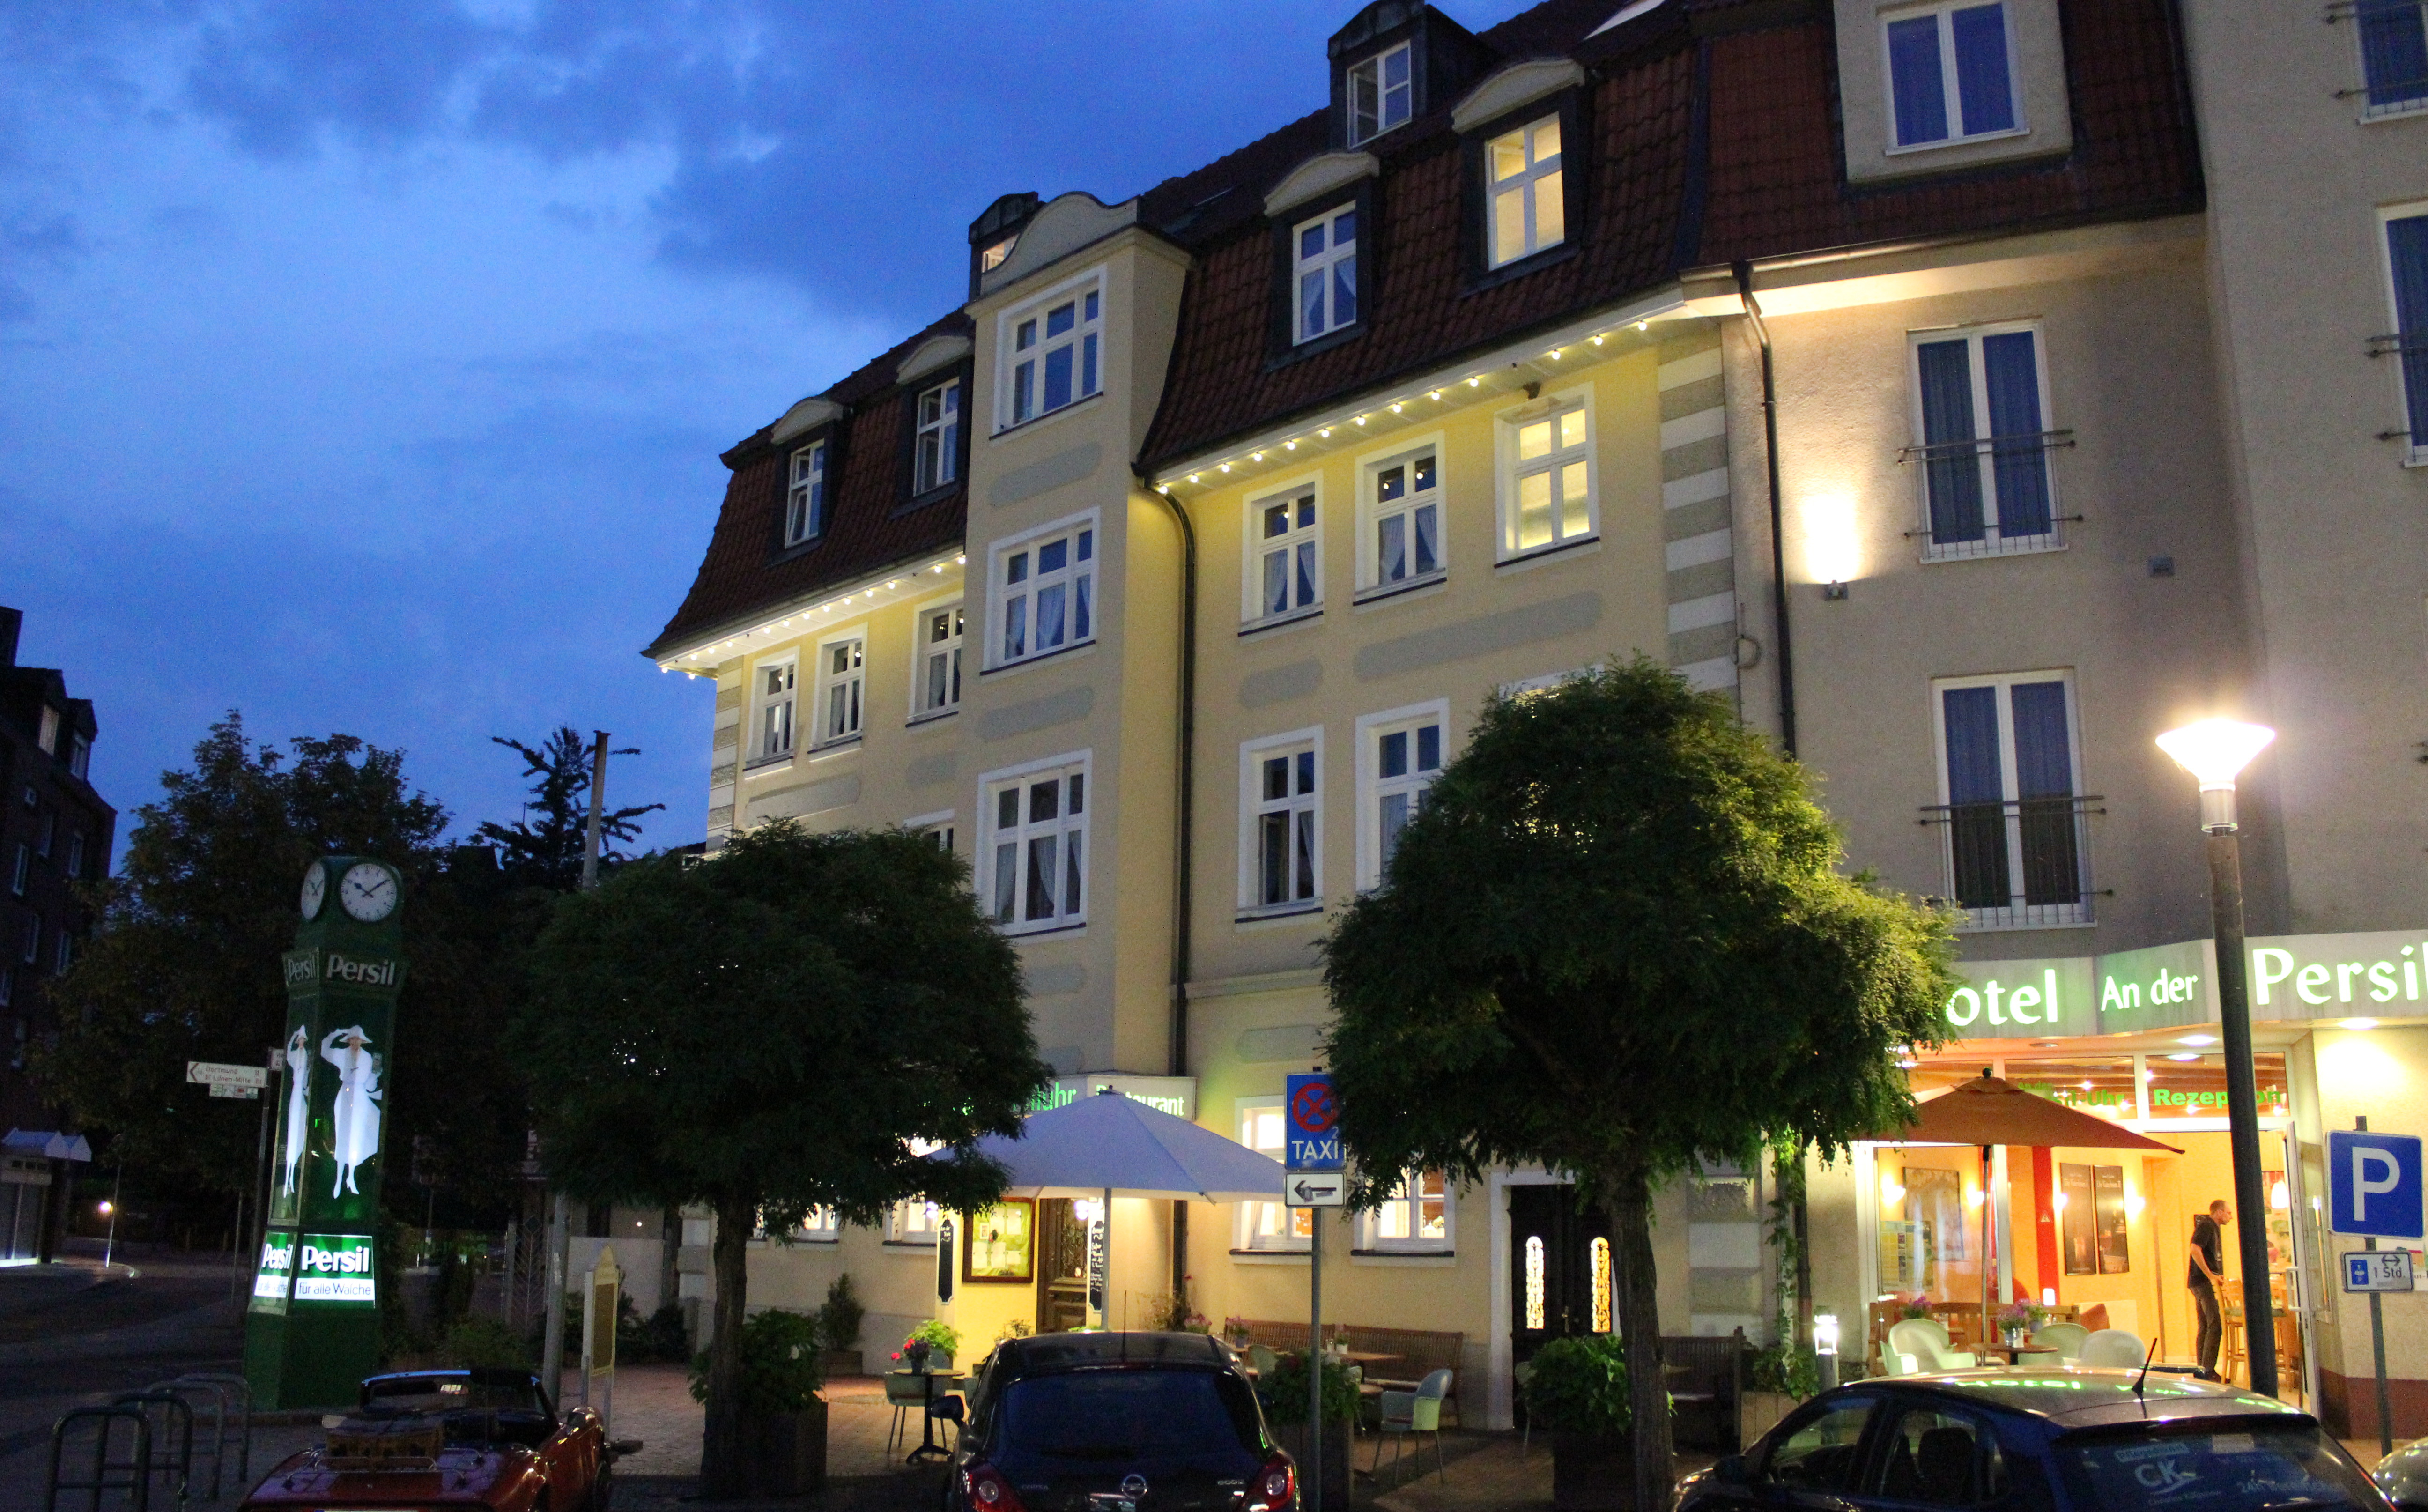 Das Hotel An der Persiluhr in Lünen an einem gemütlichen Sommerabend